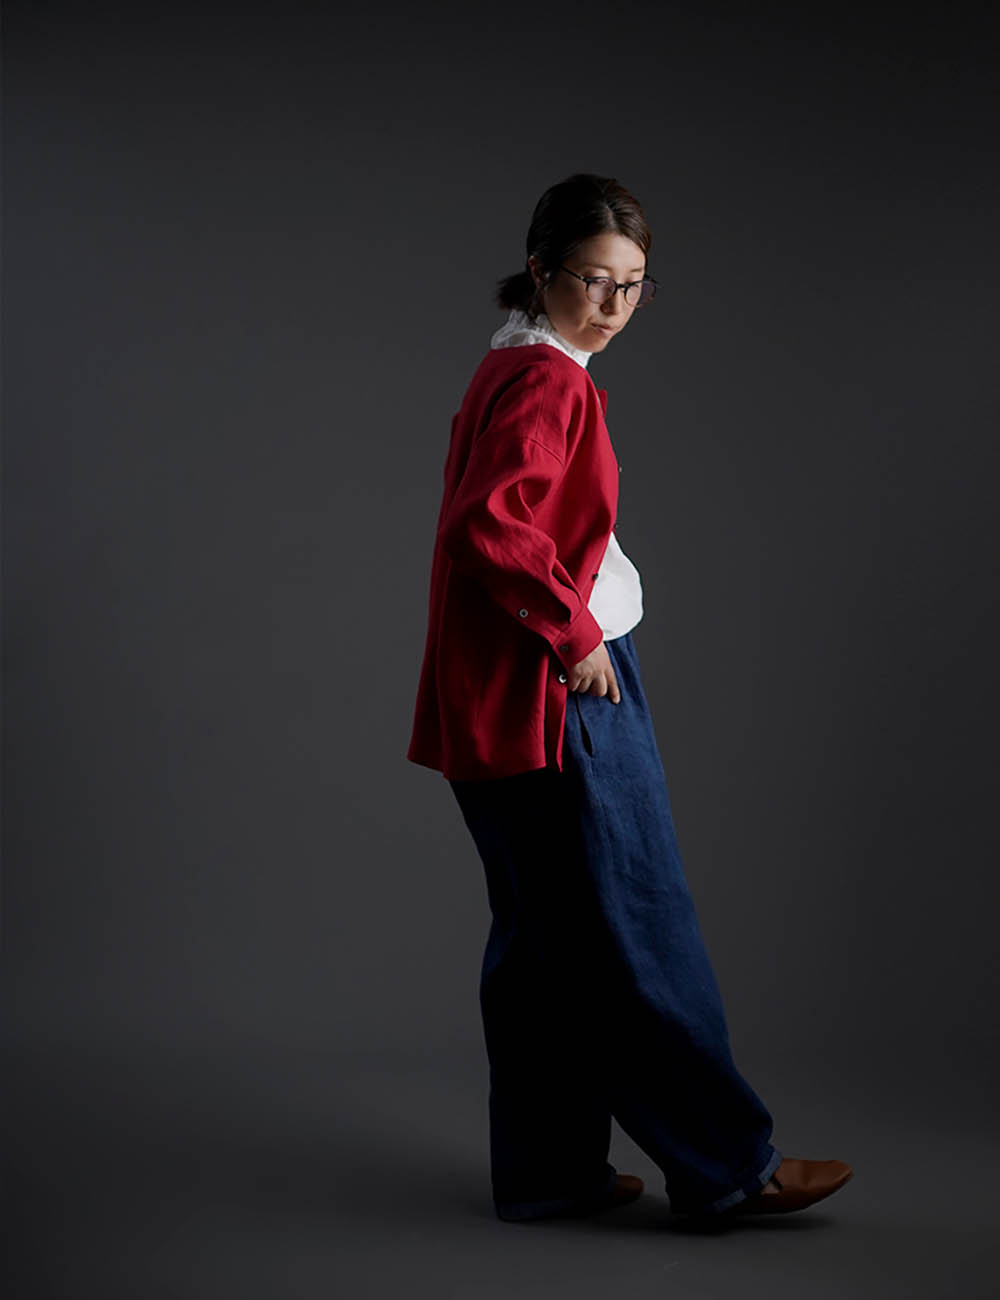 【10月9日21時～販売開始】wafu Premium Linen 起毛 ノーカラーシャツジャケット / クリストローゼ t036c-ctr3